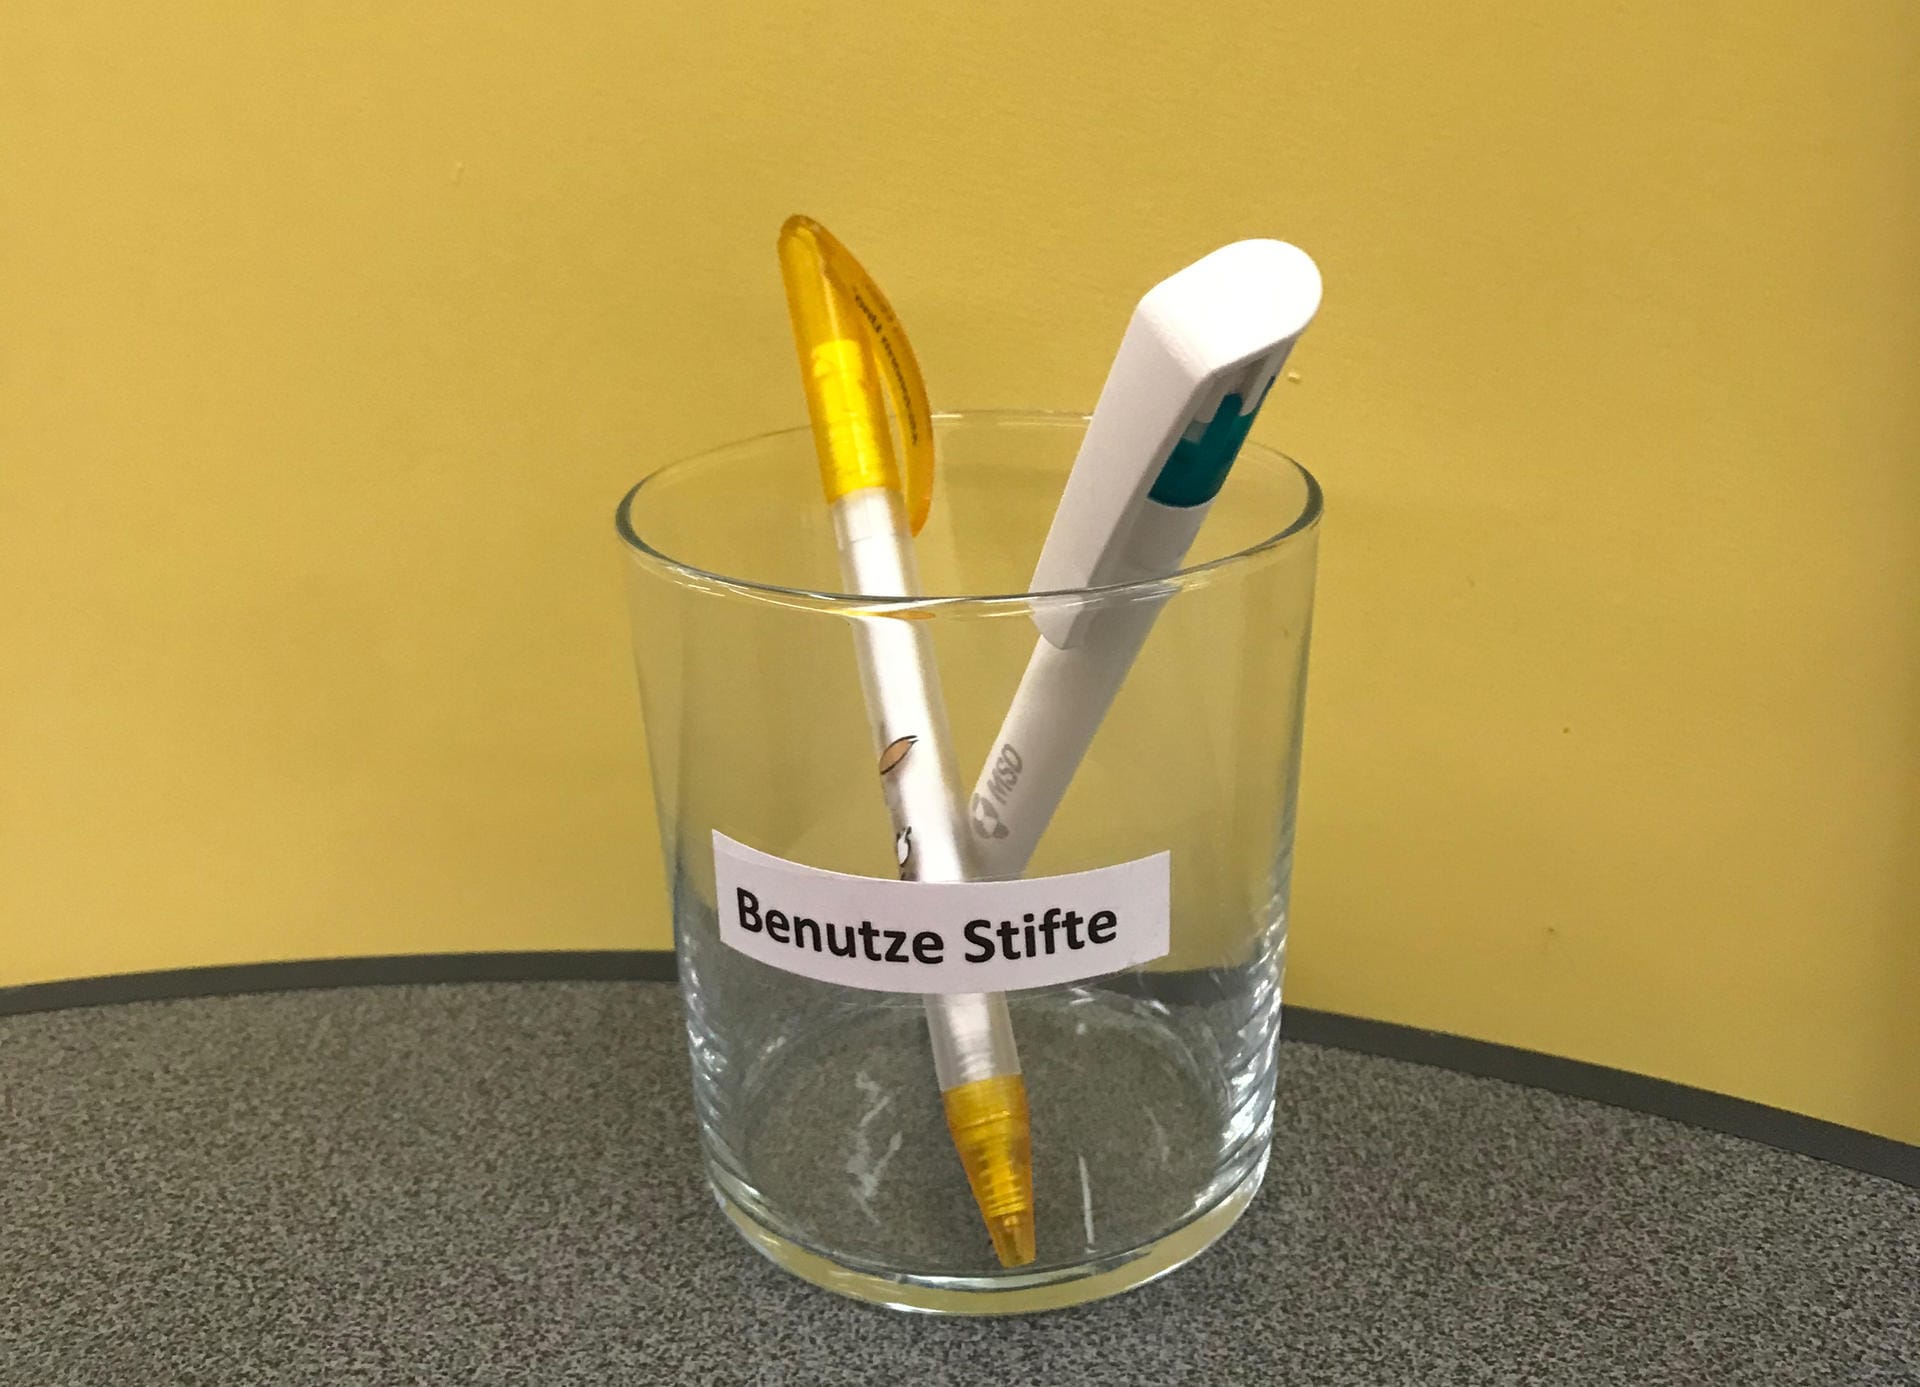 In Arztpraxen und Kliniken sieht man sie oft: Behälter, in denen benutzte Stifte abgelegt werden können.